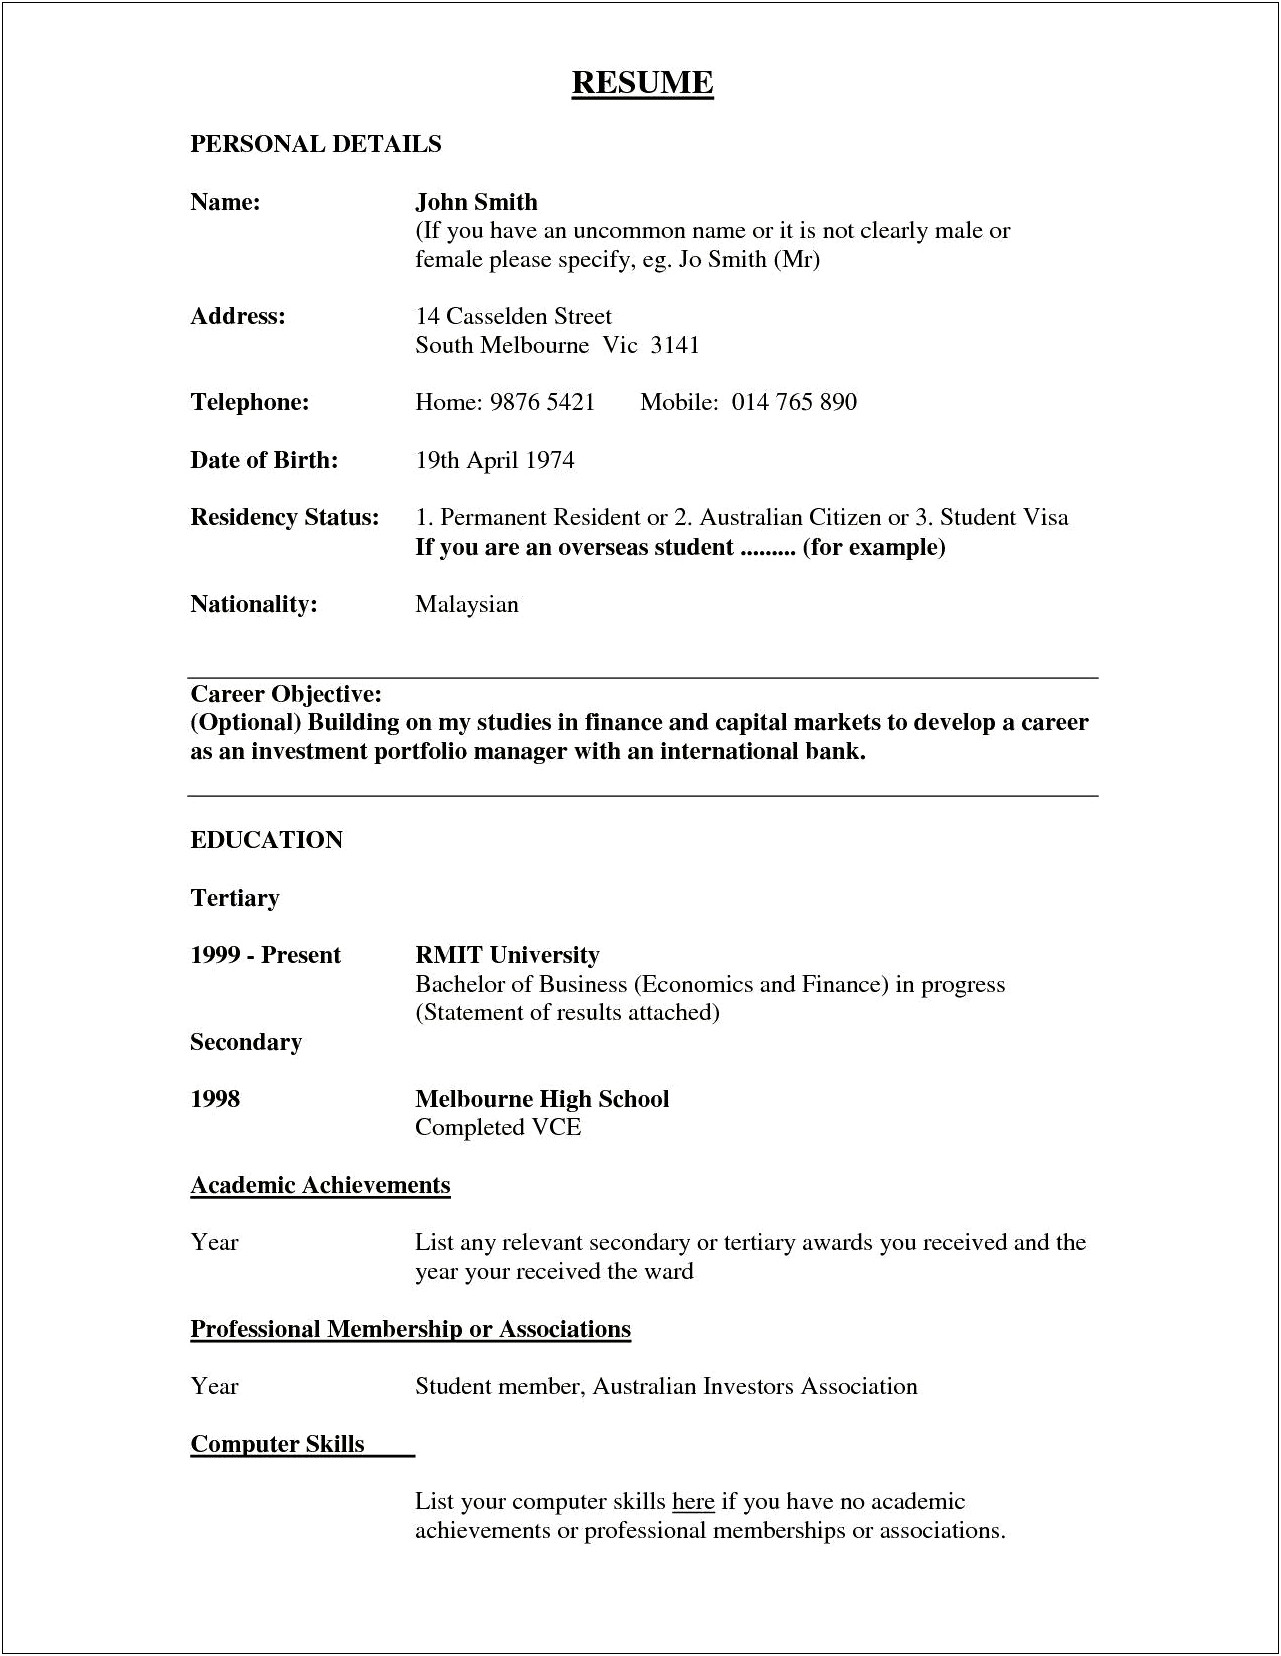 Job Description For A Bank Teller Resume